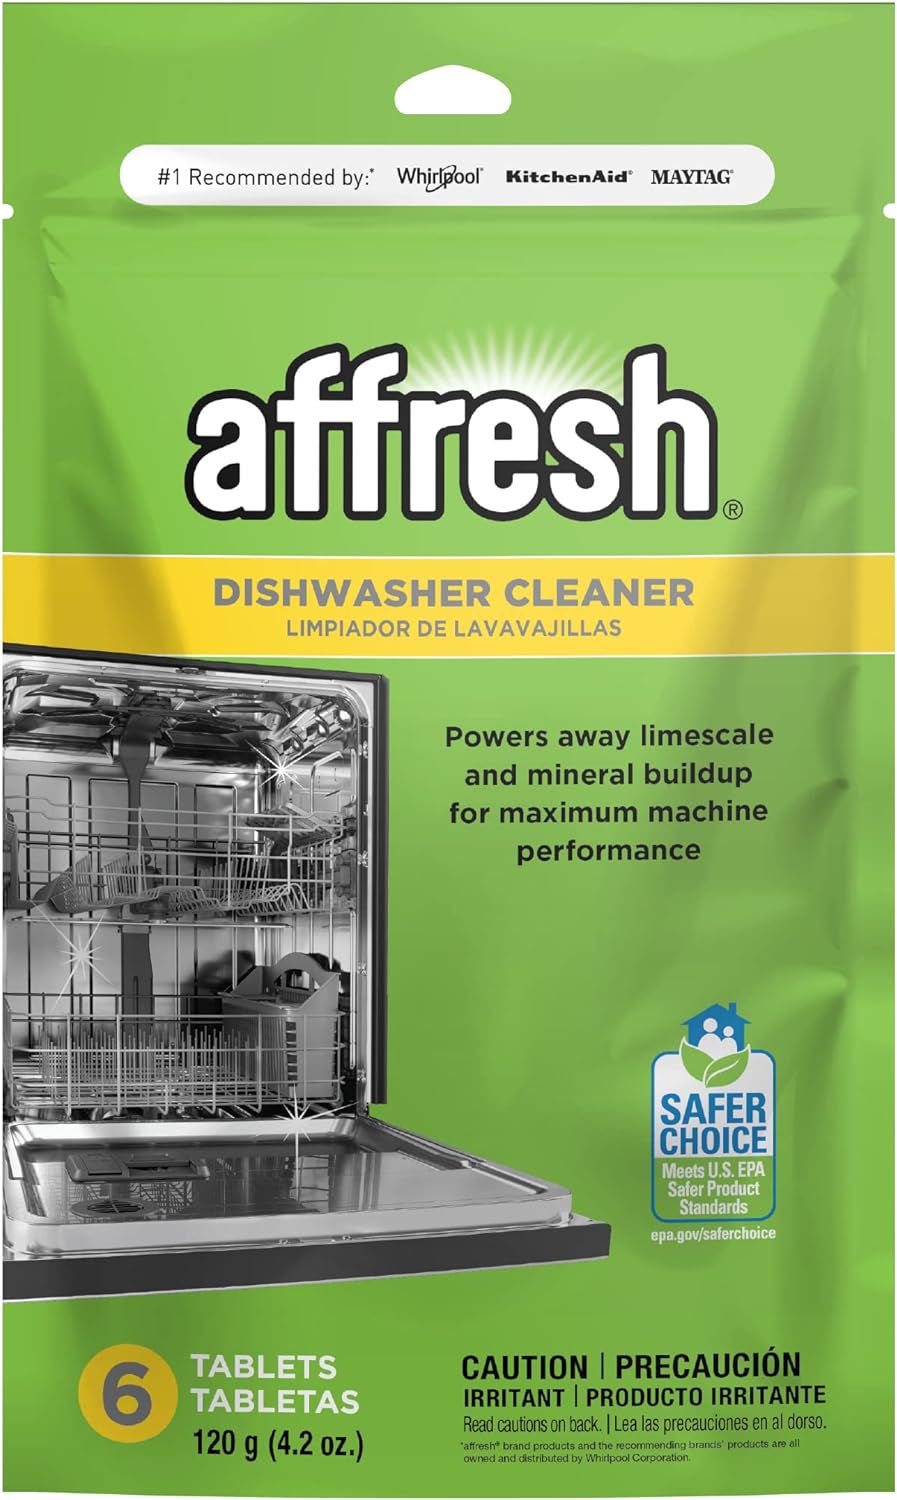 Limpiador de lavavajillas Affresh